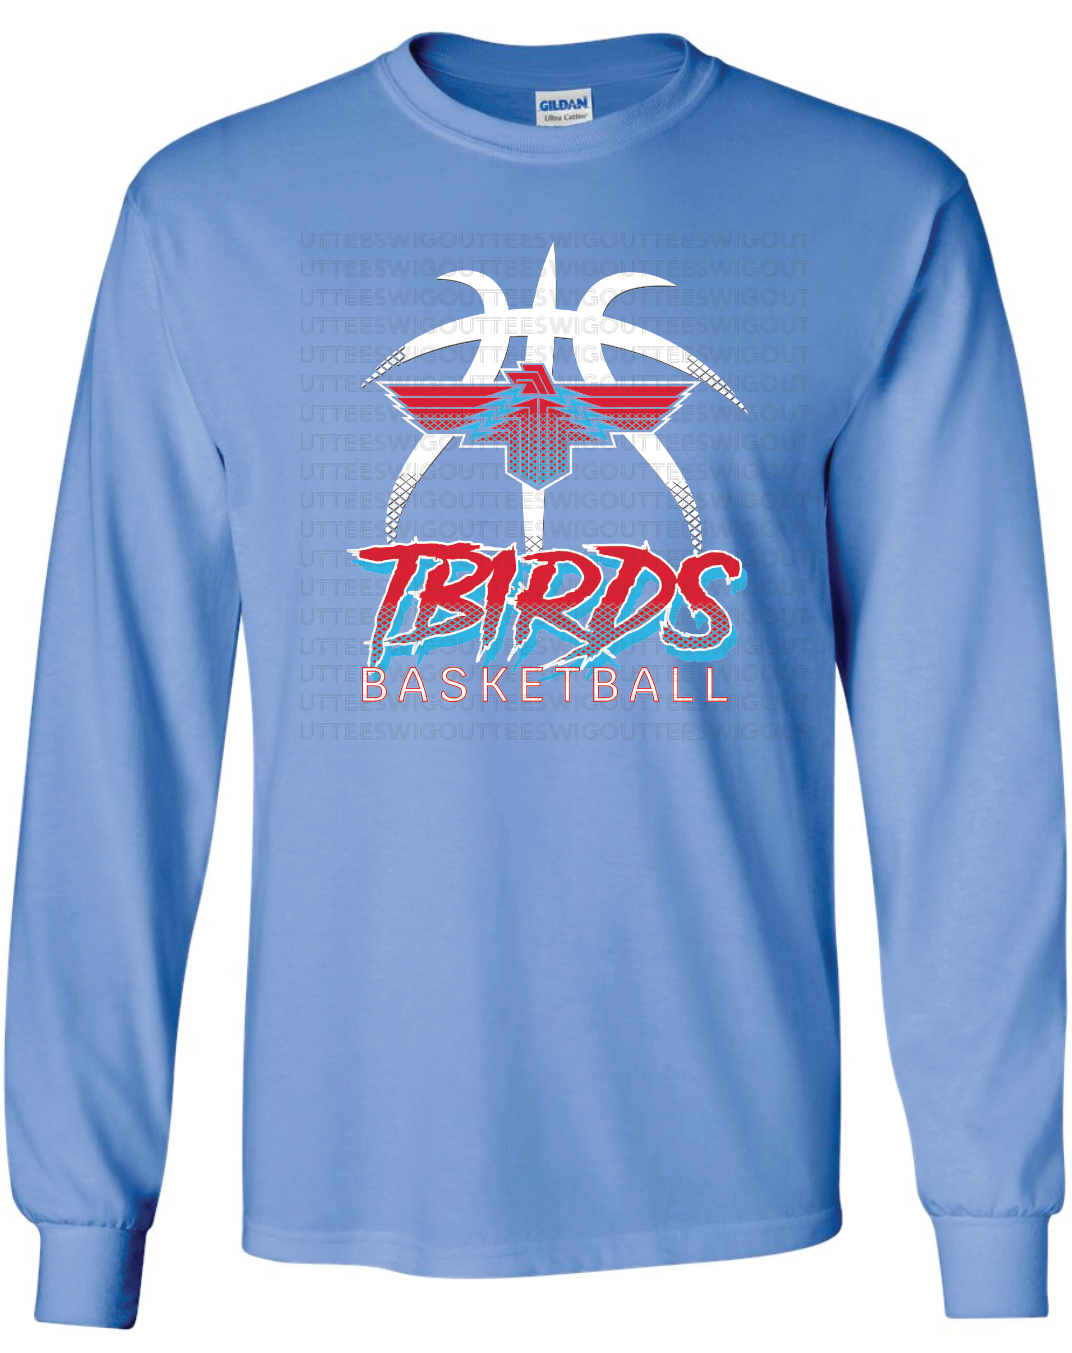 Tbirds Basketball Gildan Ultra Cotton Long Sleeve T-Shirt